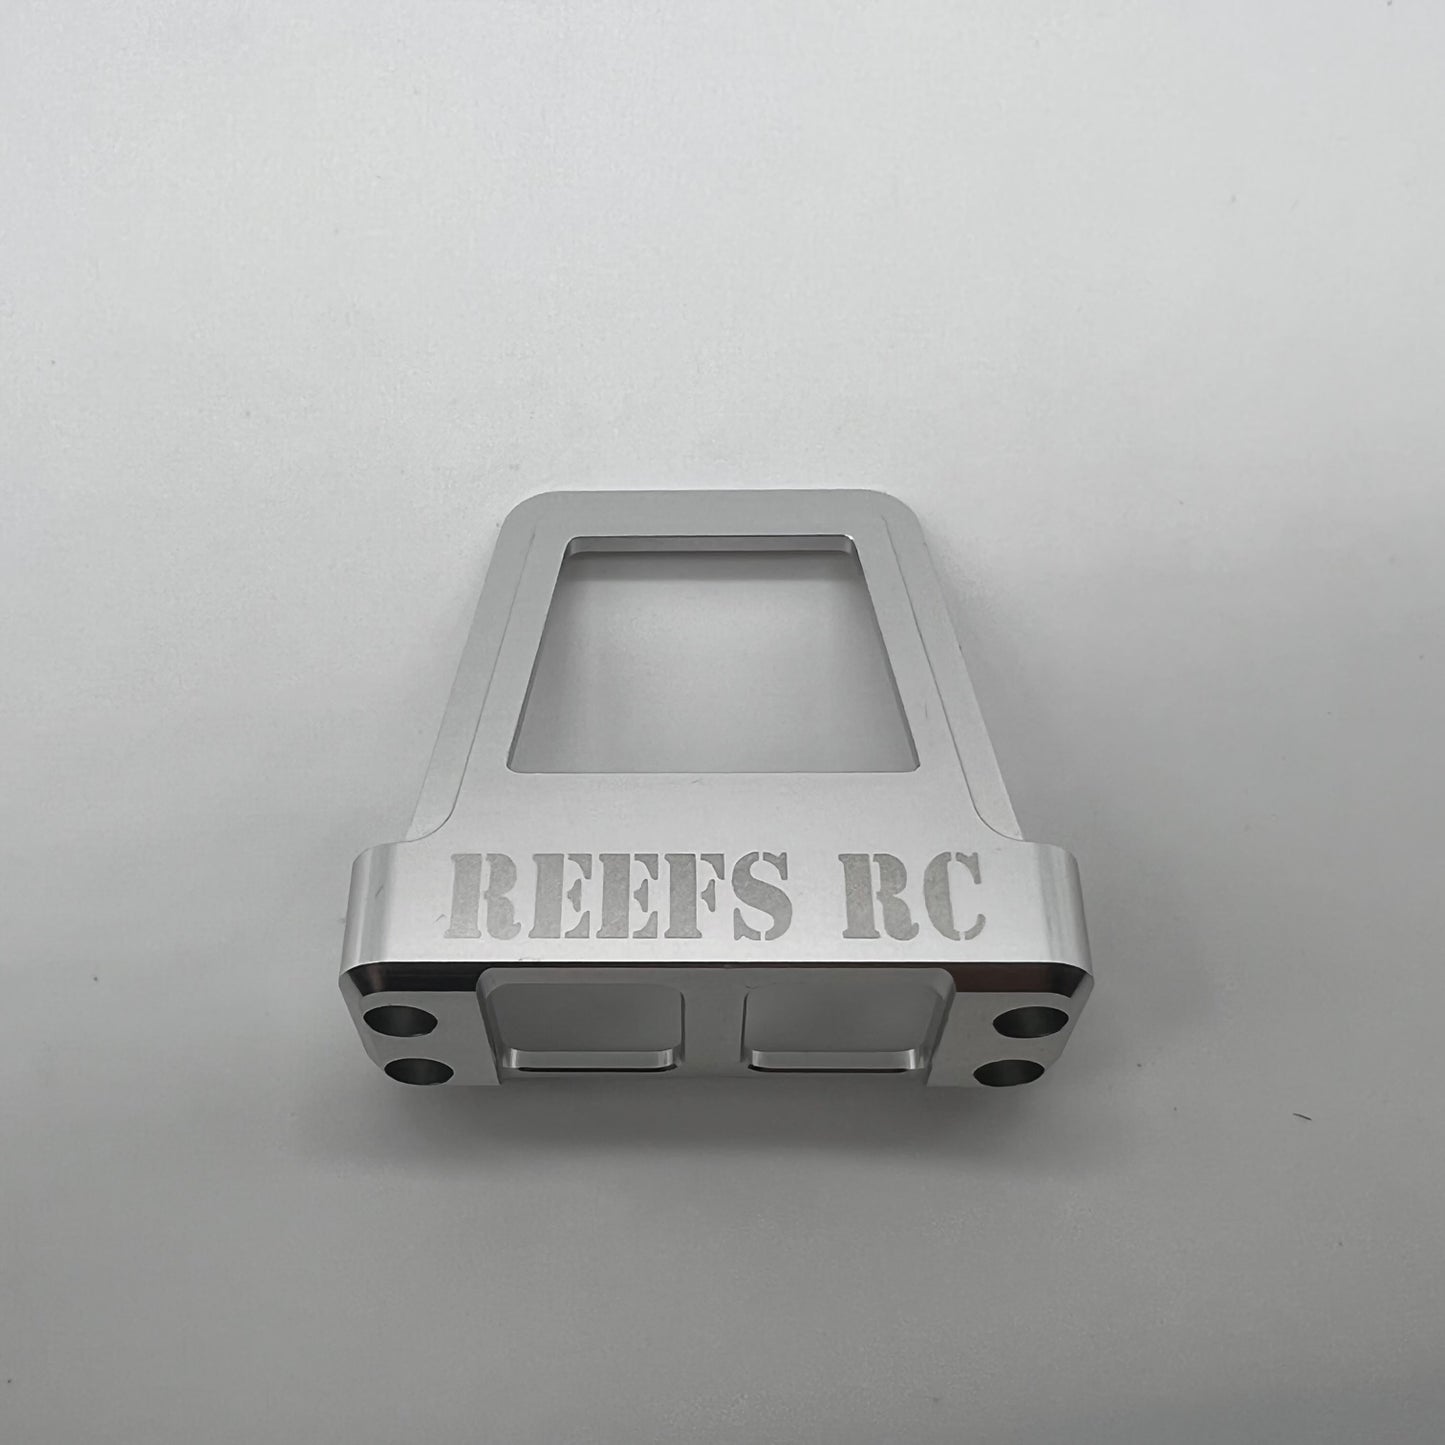 REEFS Servo Shield (Silver)